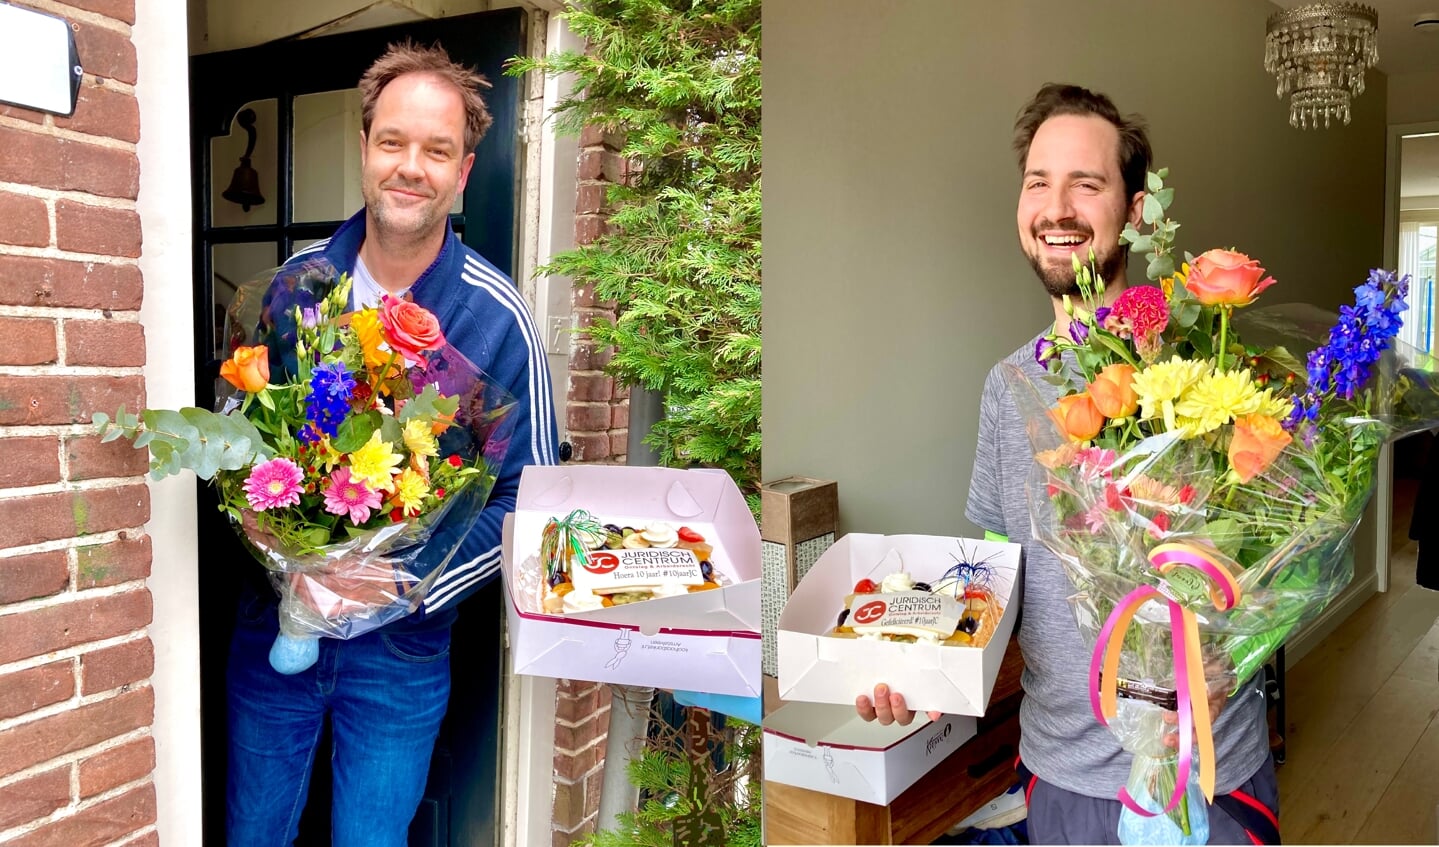 Ronald Smits en Joris van Vliet kregen van hun medewerkers taart en bloemen thuisbezorgd vanwege hun 10-jarig bedrijfsjubileum